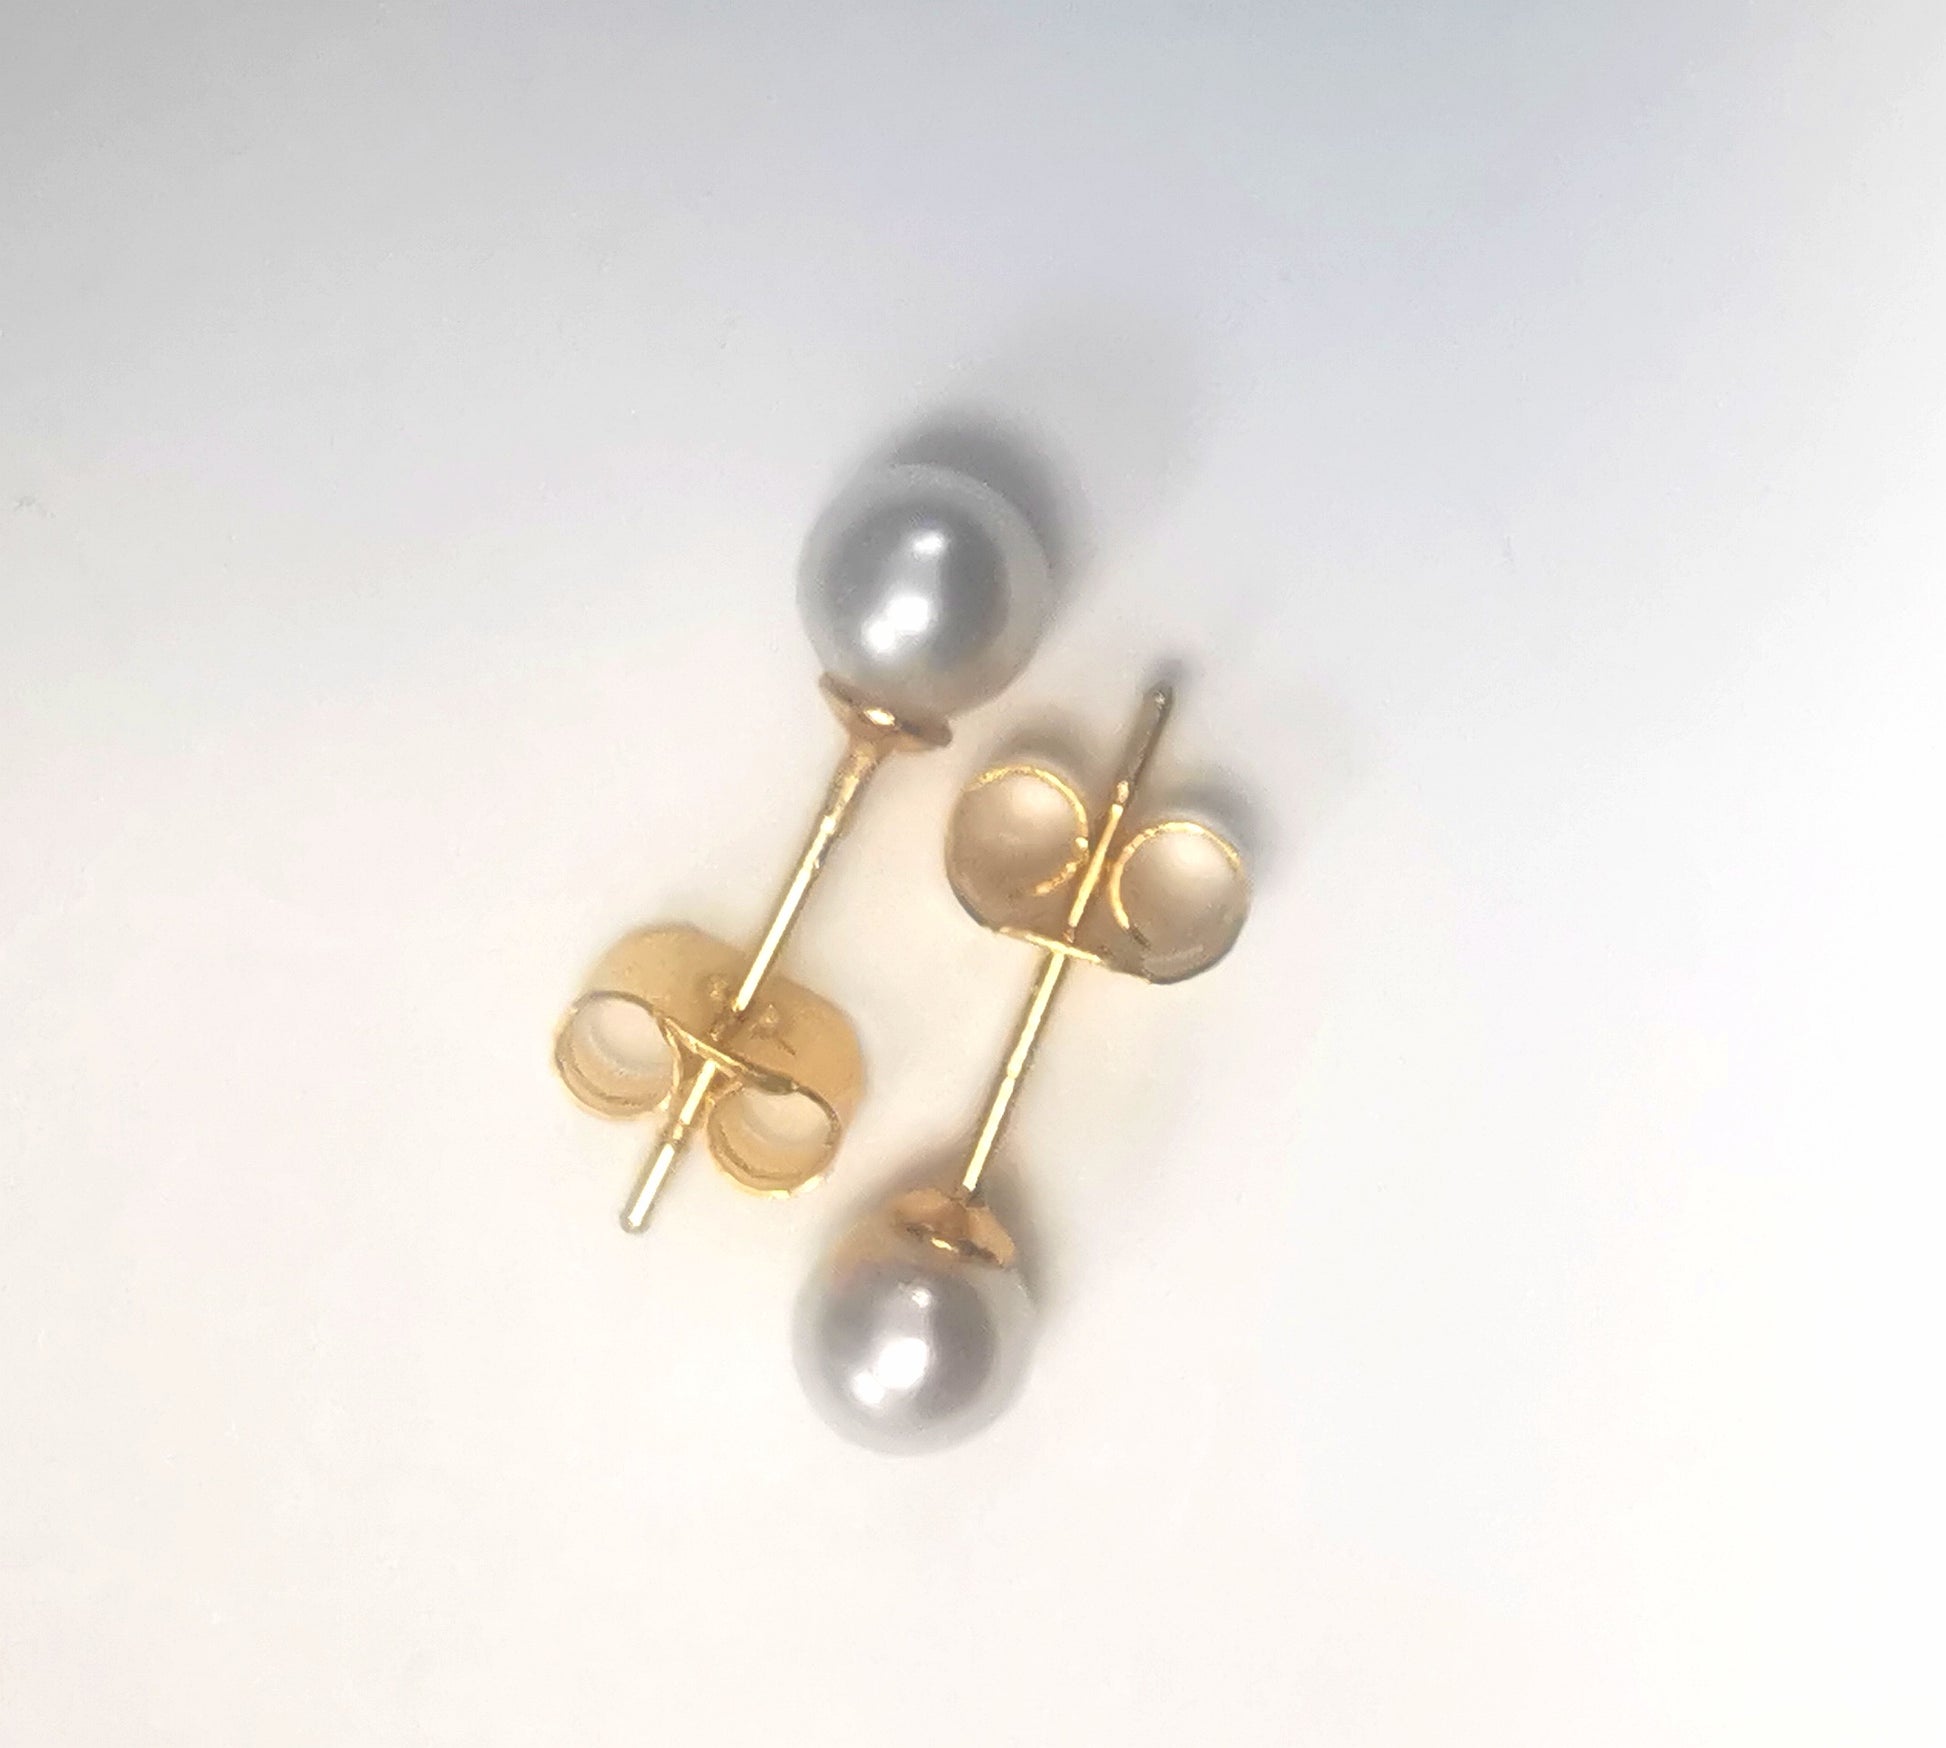 Boucles d'oreilles perles de culture blanches rondes 5mm montées sur clous plaqués or. Présentées cote à cote, têtes bèches, boucles de gauche perle en haut, celle de droite, perle en bas, sur fond blanc. Vue de dessus.